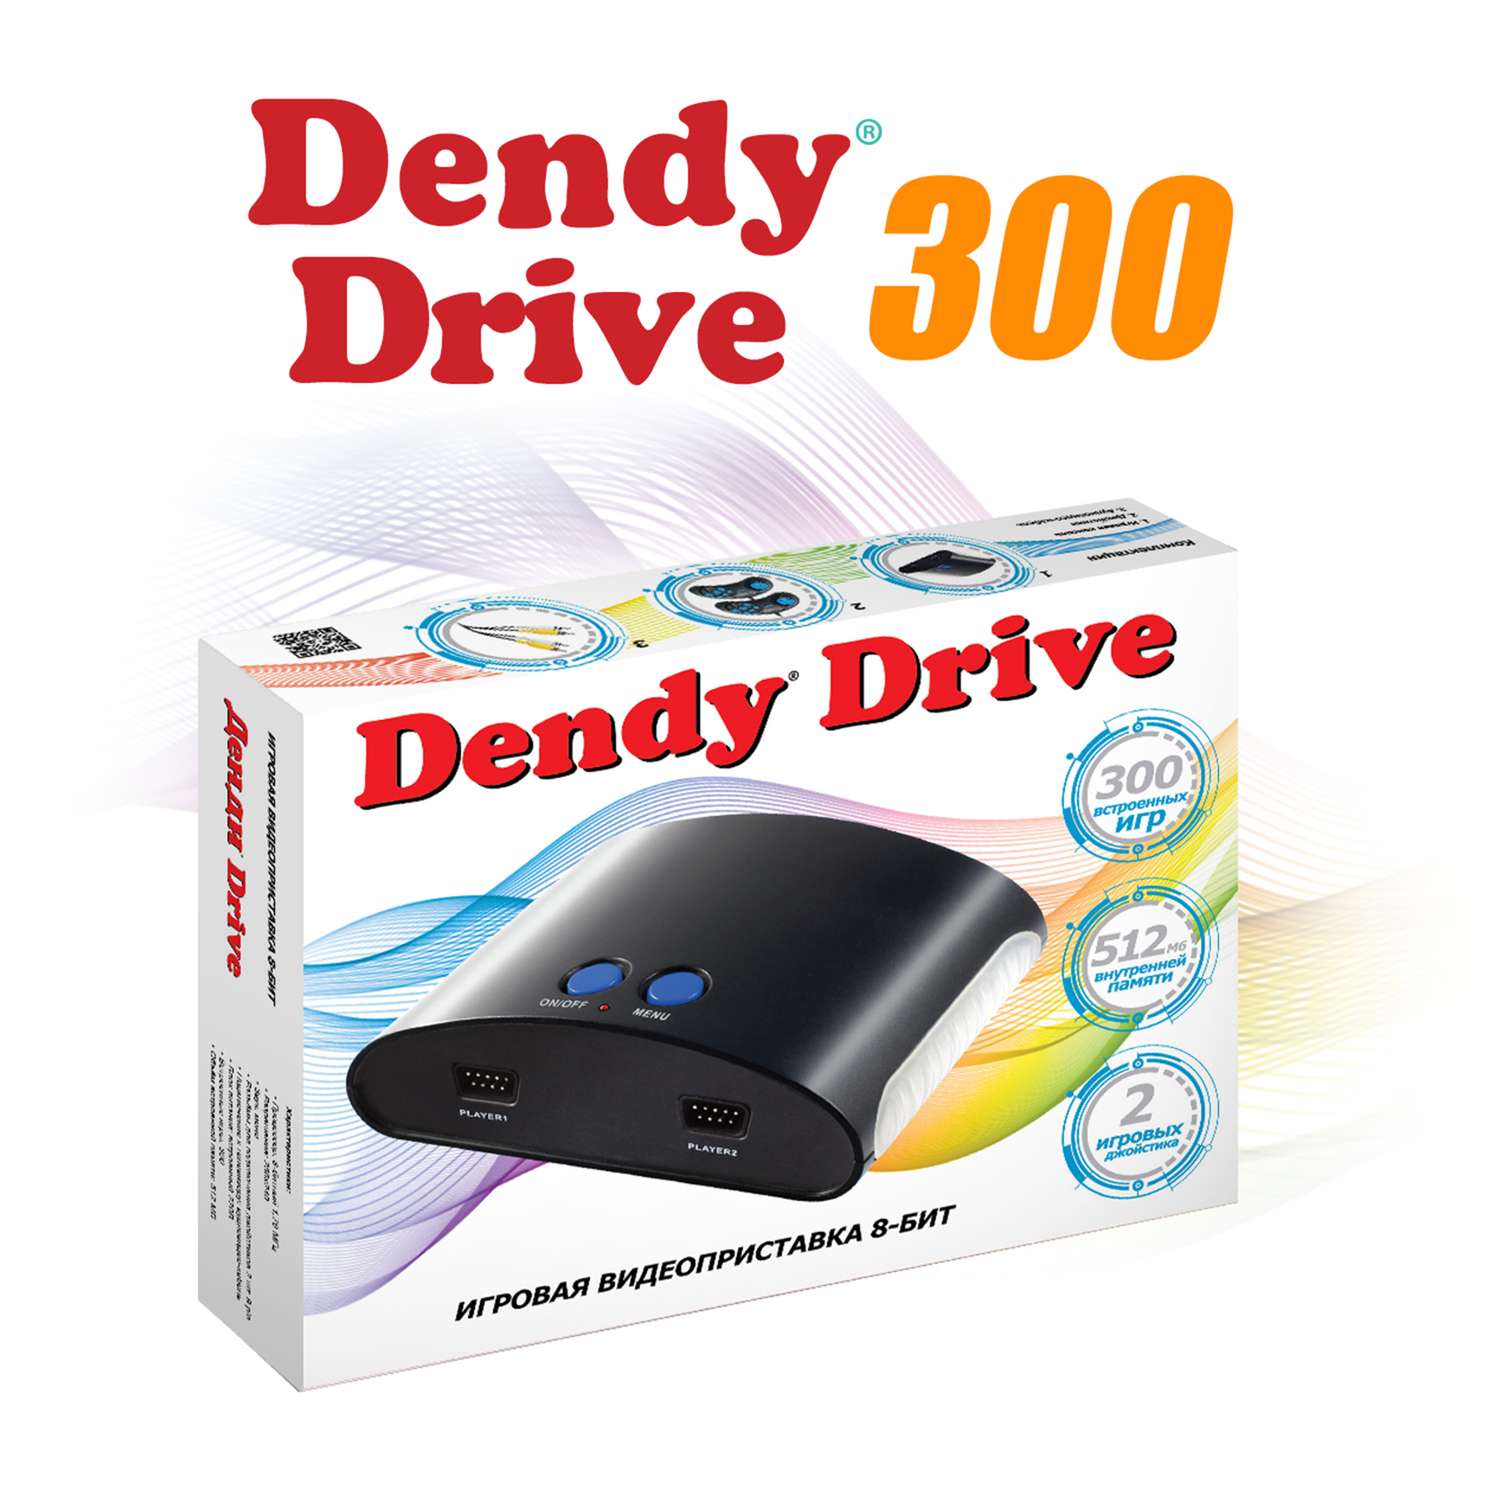 Игровая приставка Dendy Drive 300 игр - фото 1